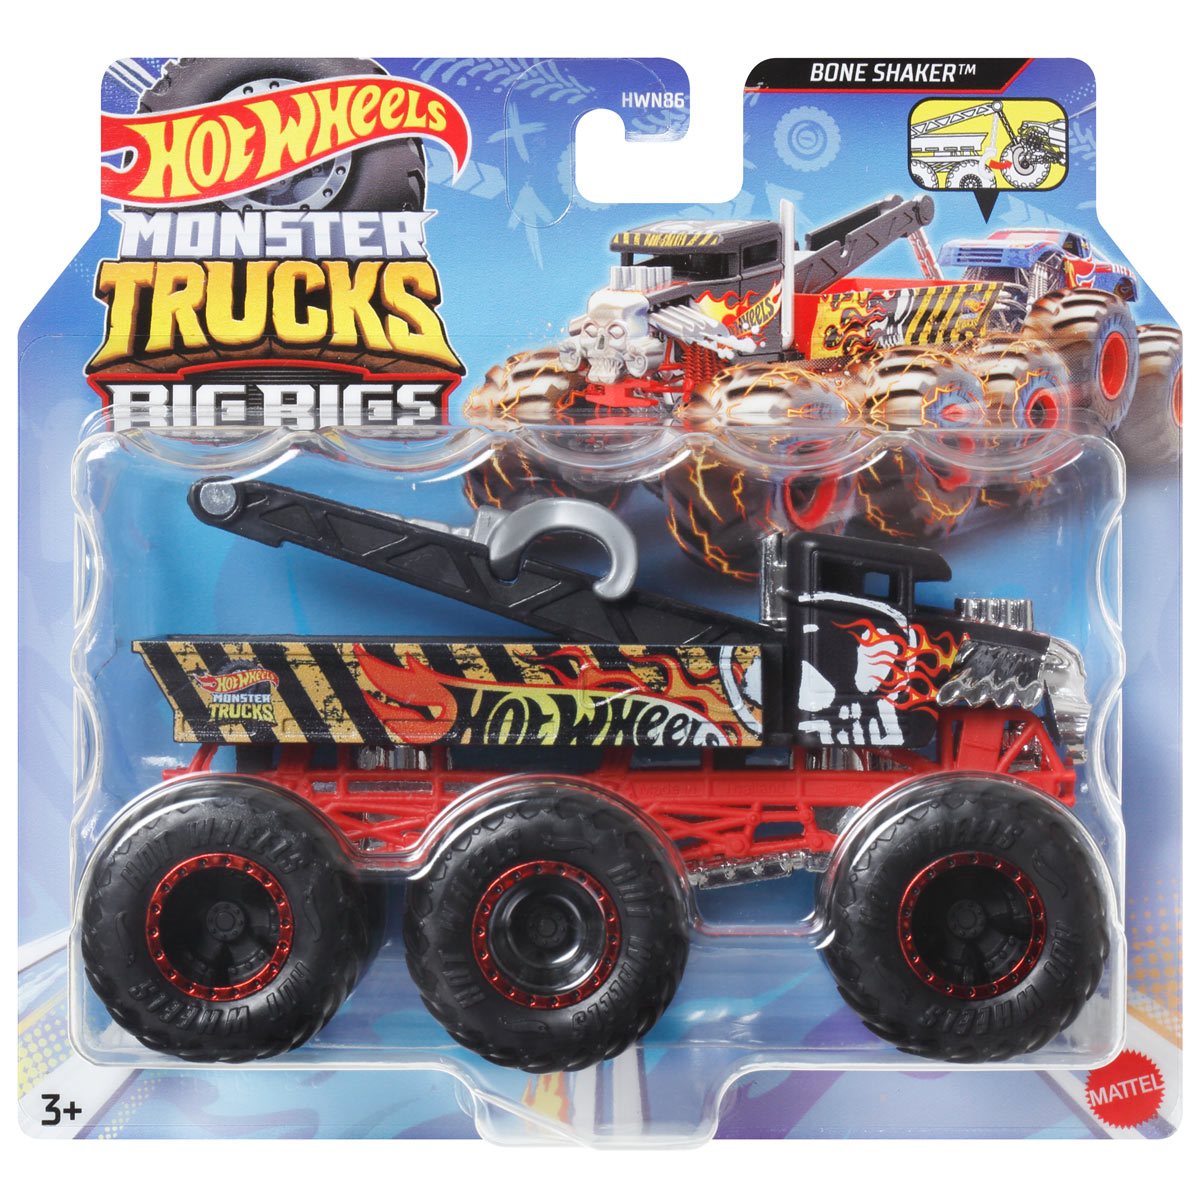 Hot Wheels Monster Trucks Bone Shaker 1:64 Scale